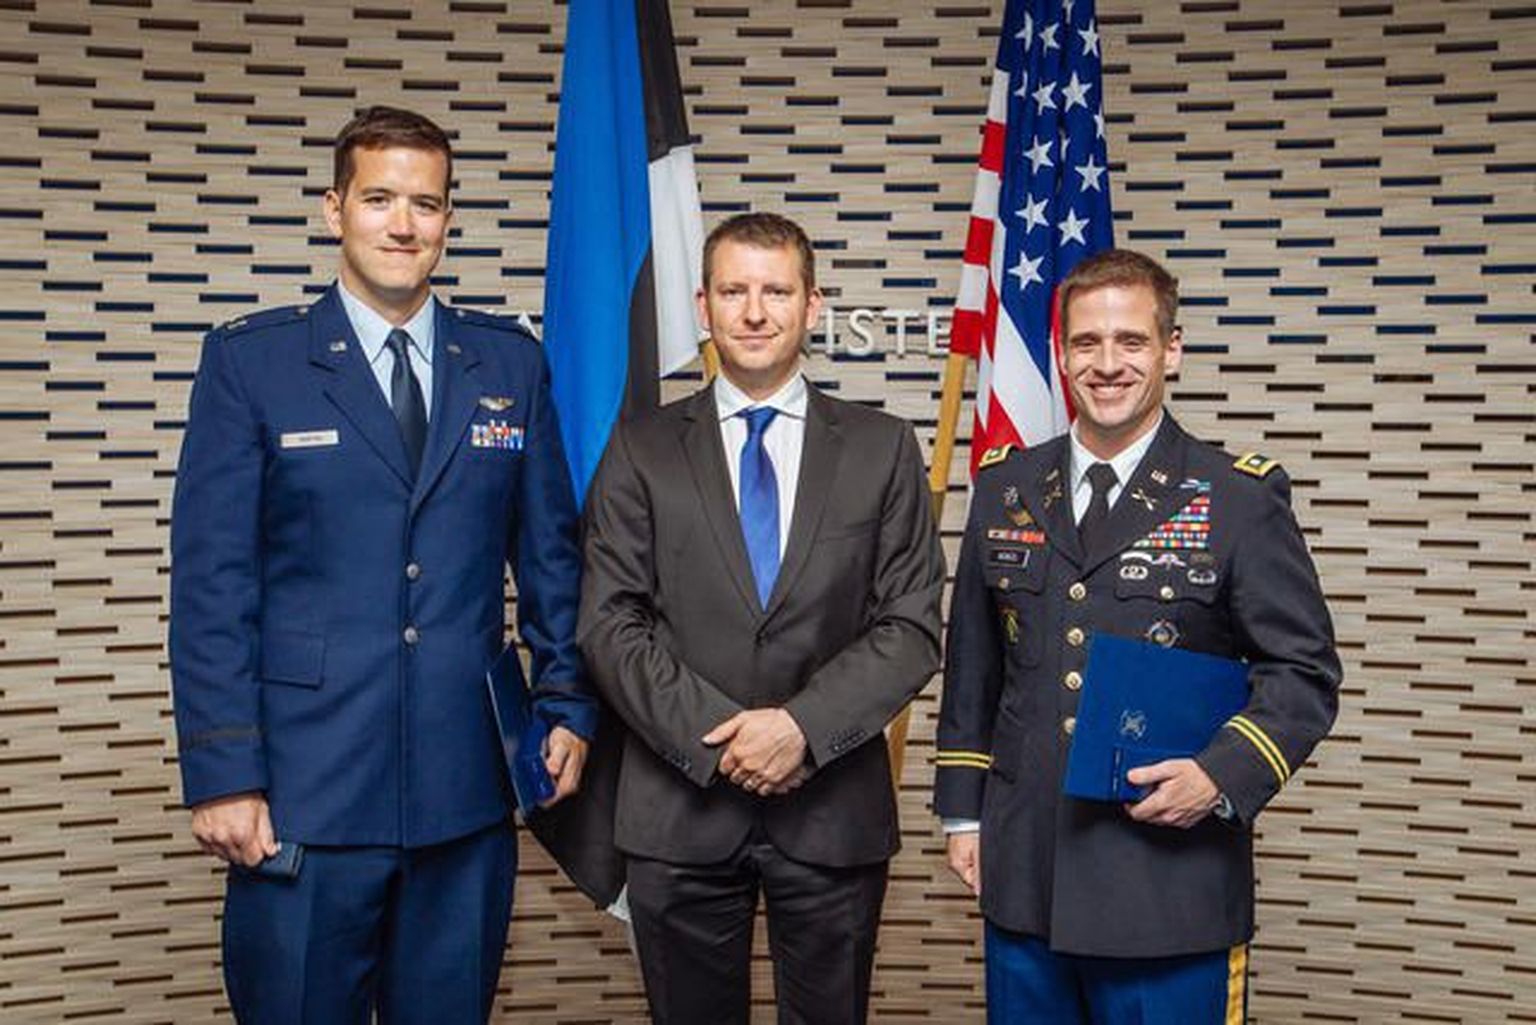 Kaitseministeeriumi kantsler Jonatan Vseviov andis täna üle kaitseministeeriumi teeneristi III klassi medalid Ameerika Ühendriikide kolonelleitnandile William McNicolile ja kapten Daniel Griffinile.